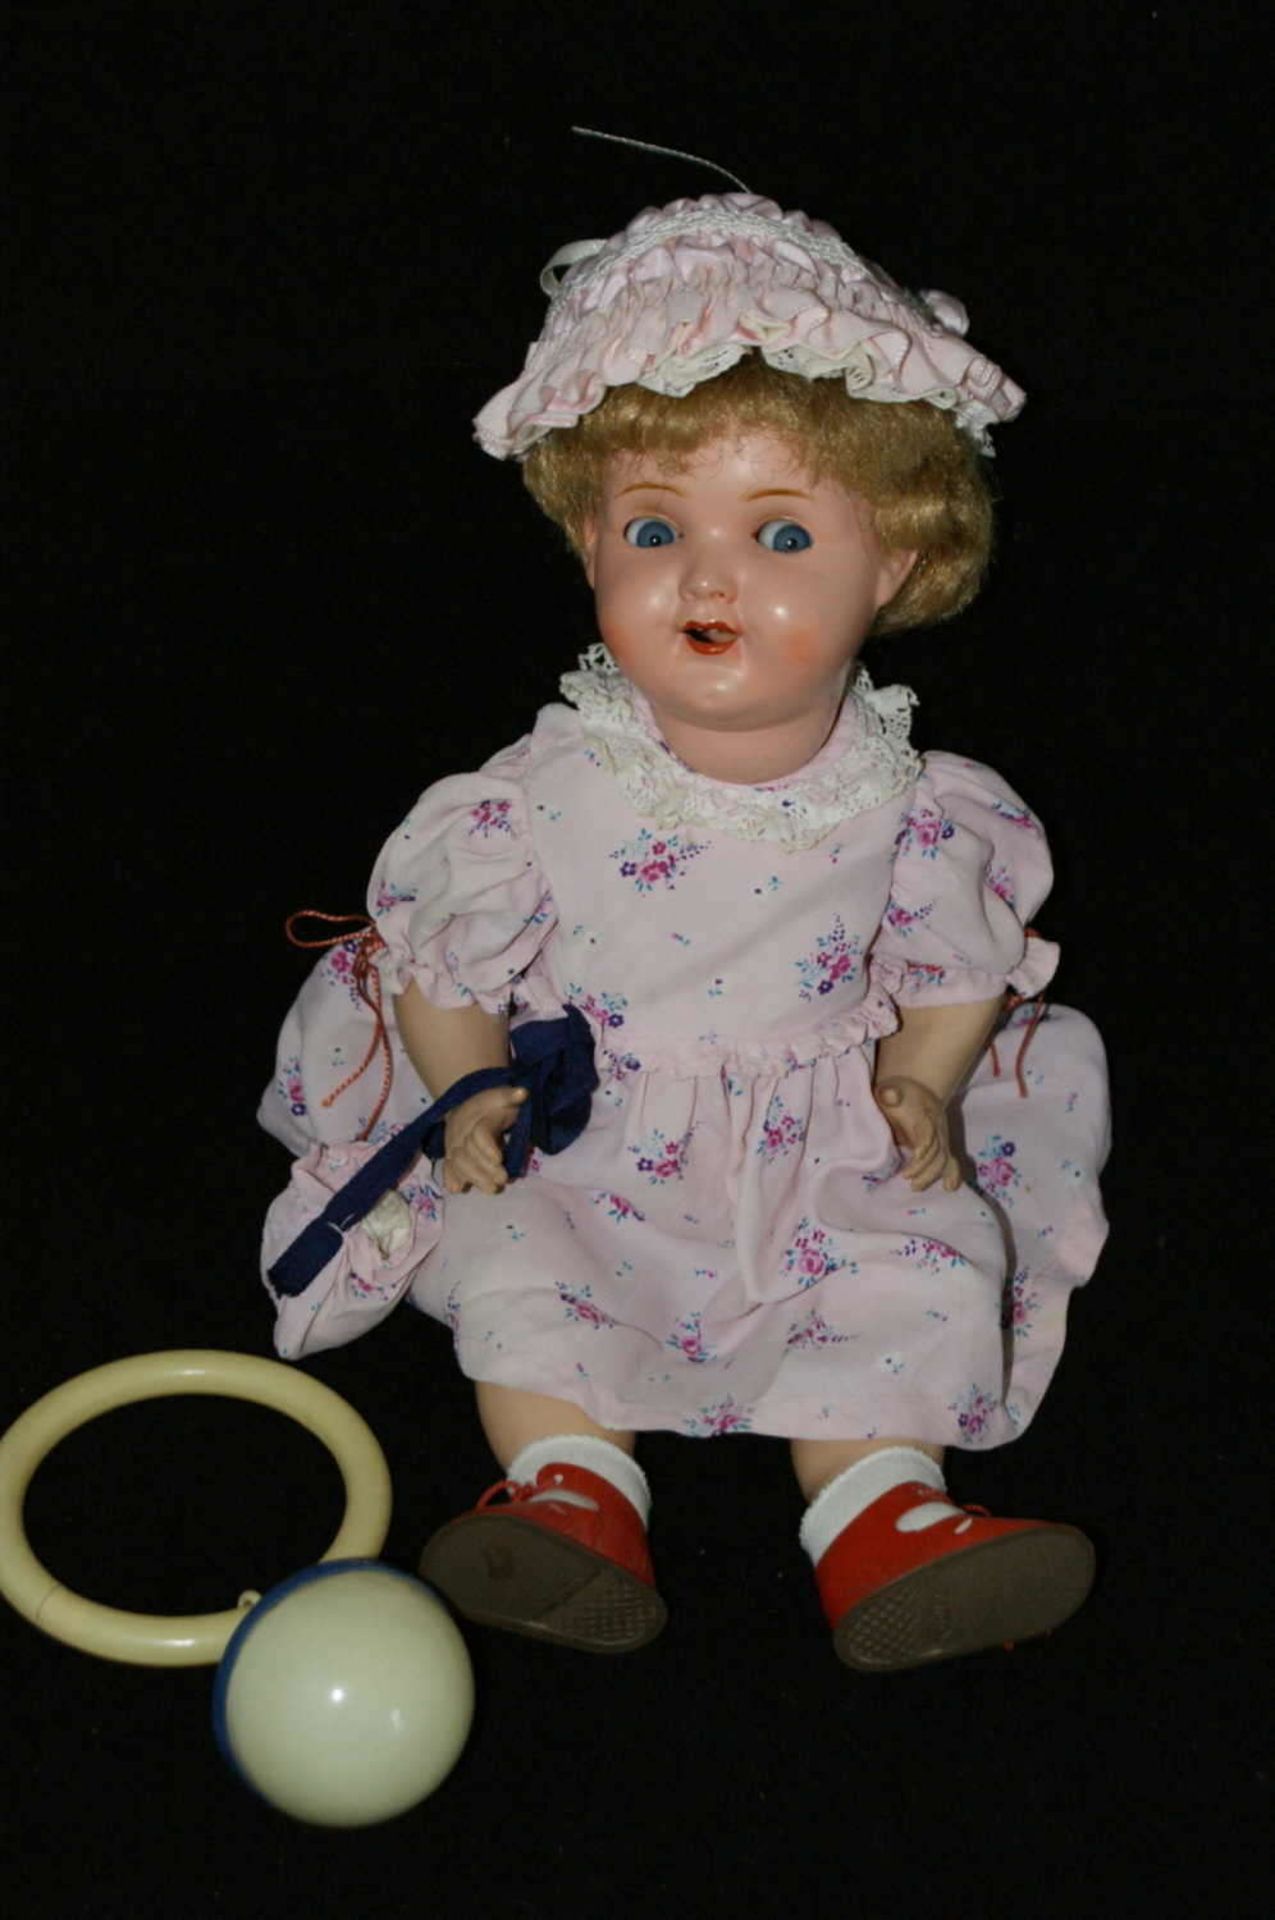 alte Zelluloid Puppe von Bruno Schmidt, am Kopf gemarkt mit Schutzmarke "Herz", F-36, Germany.